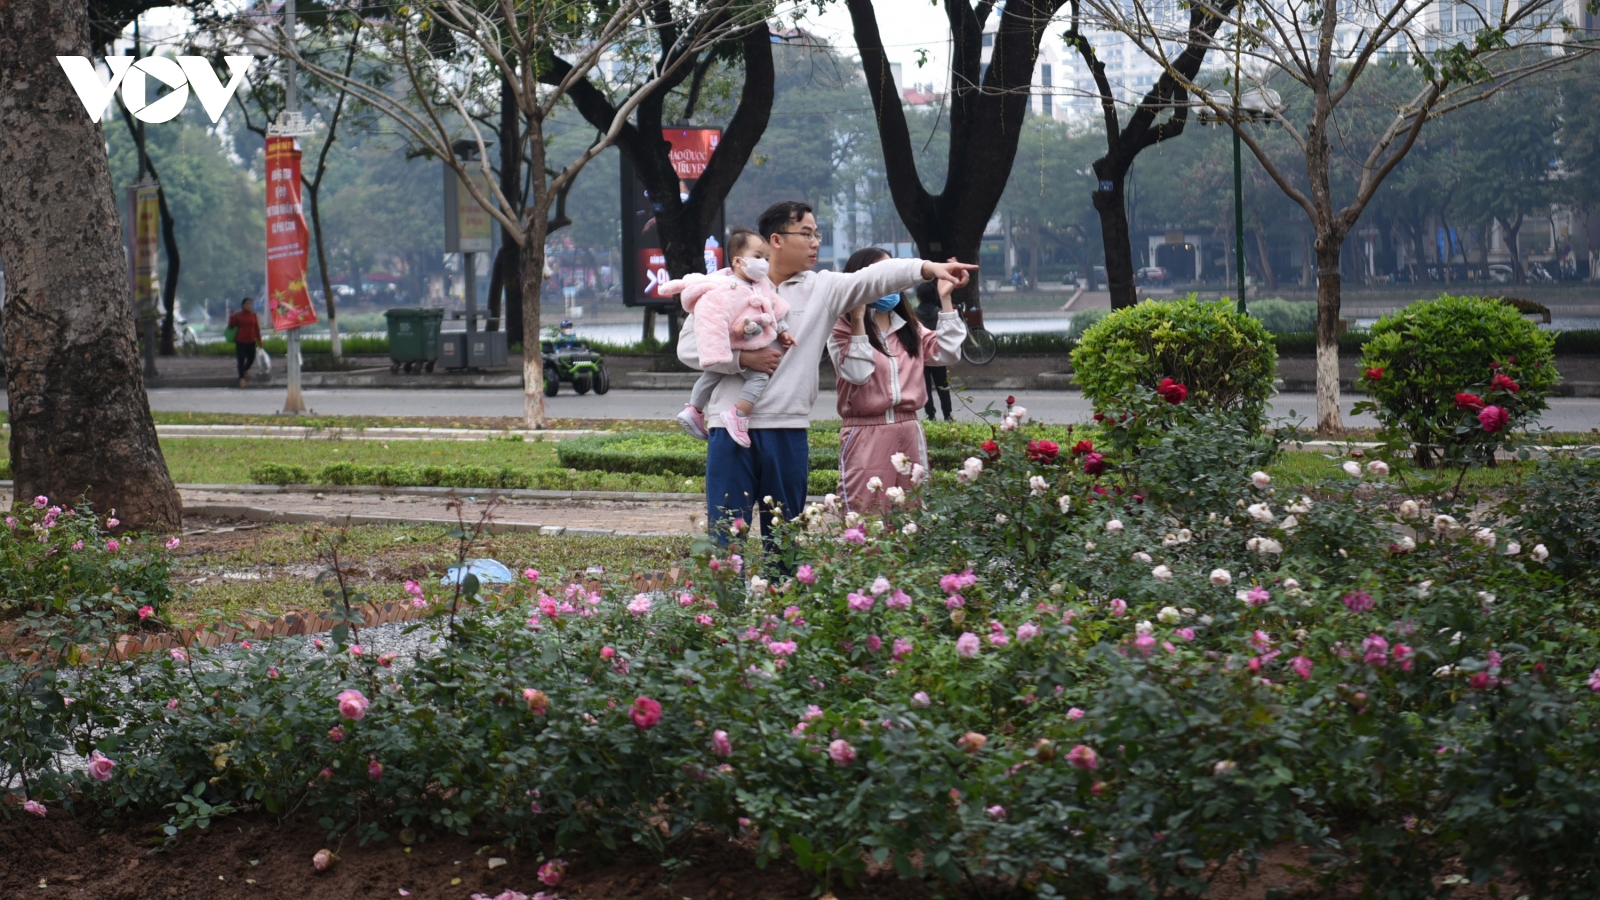 Ngỡ ngàng với vườn hồng thơm ngát tại không gian đi bộ hồ Thiền Quang